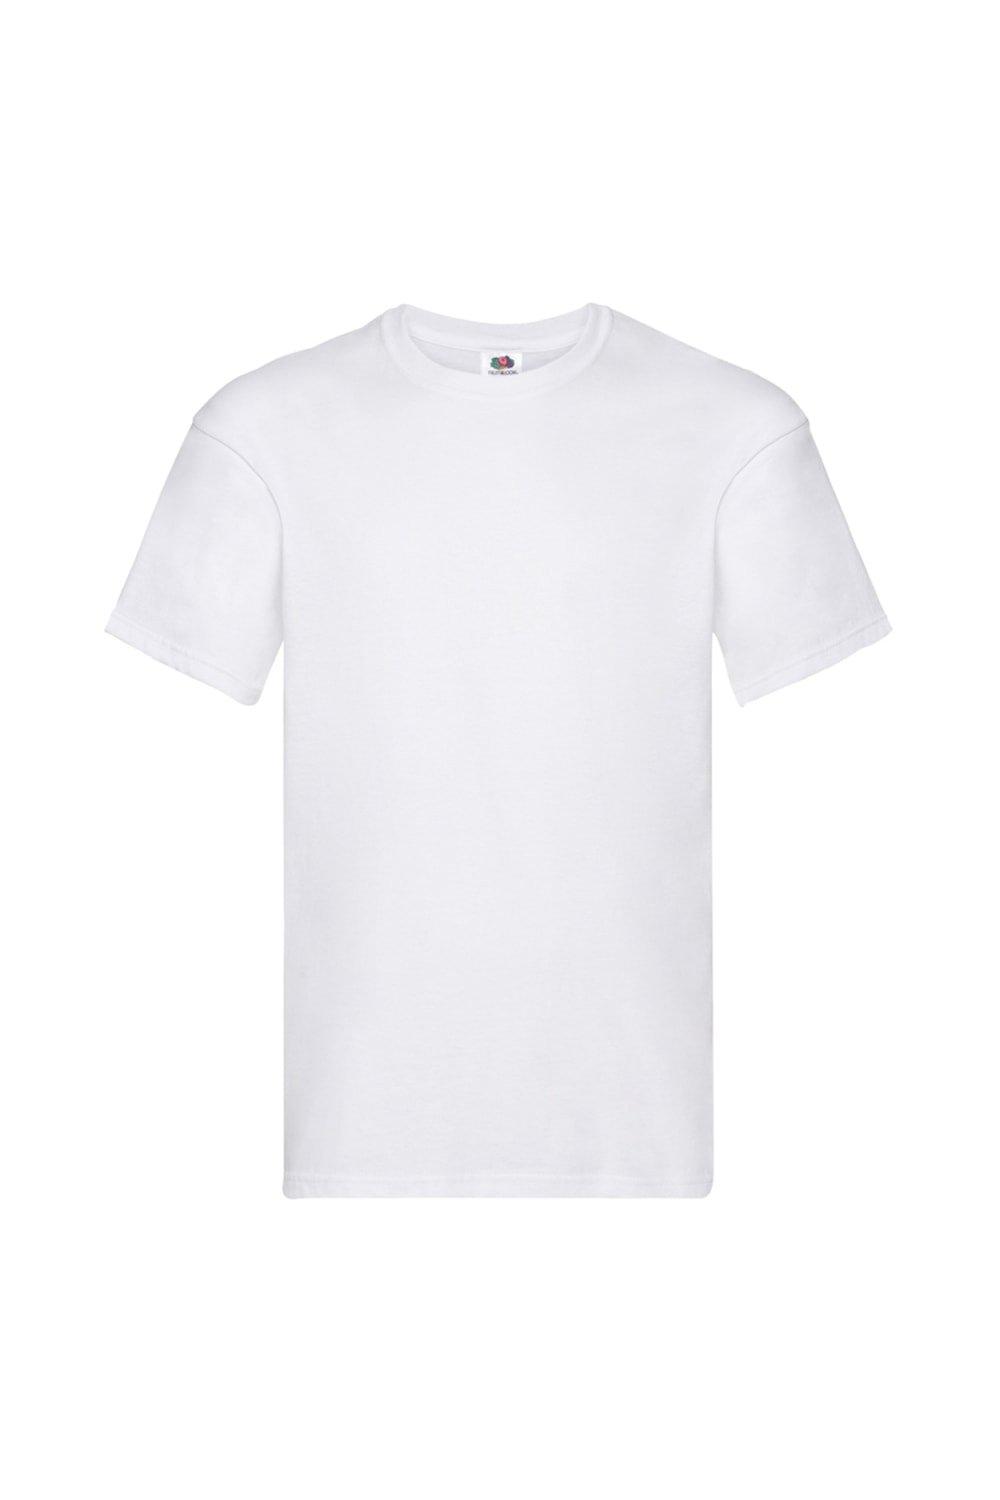 Оригинальная футболка с коротким рукавом Fruit of the Loom, белый